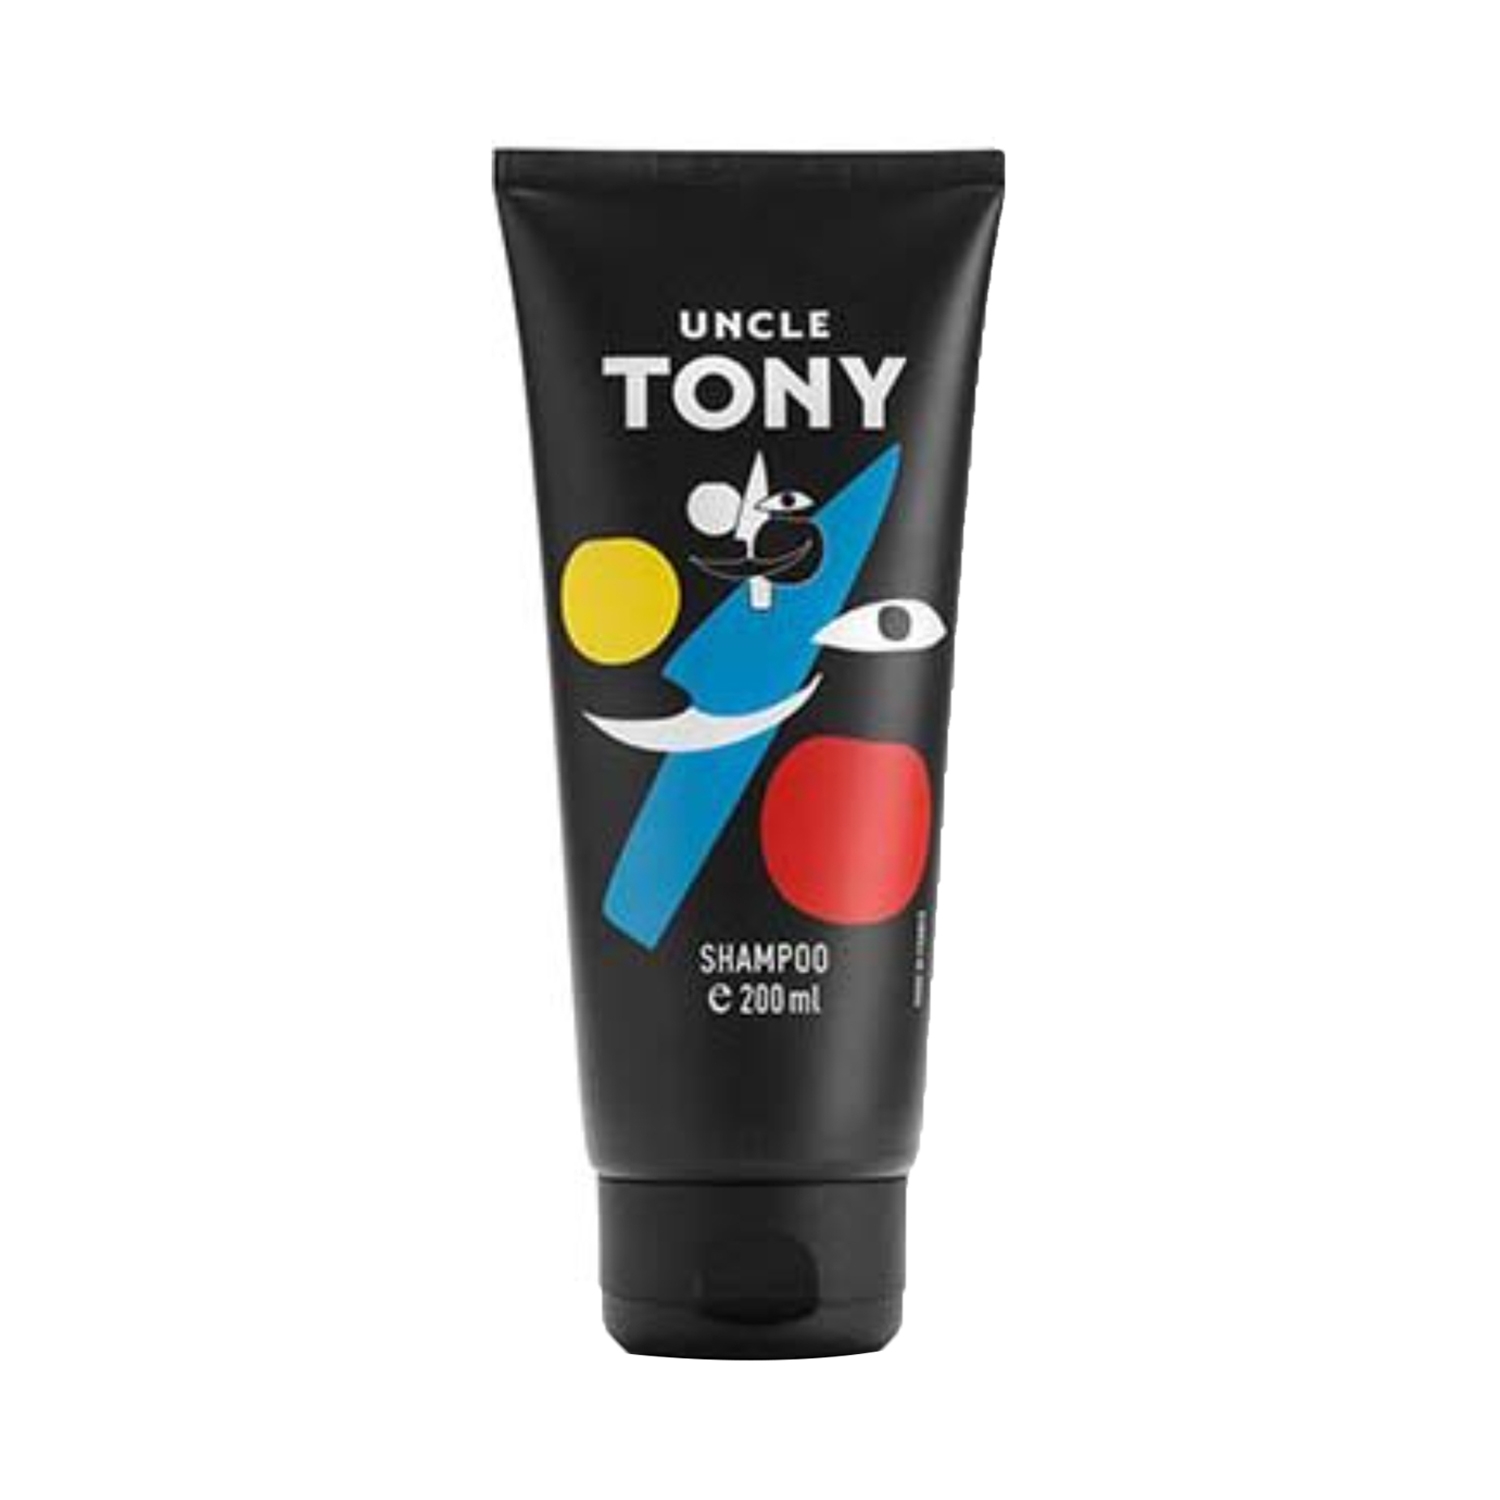 Uncle Tony Hair Shampoo (200ml)